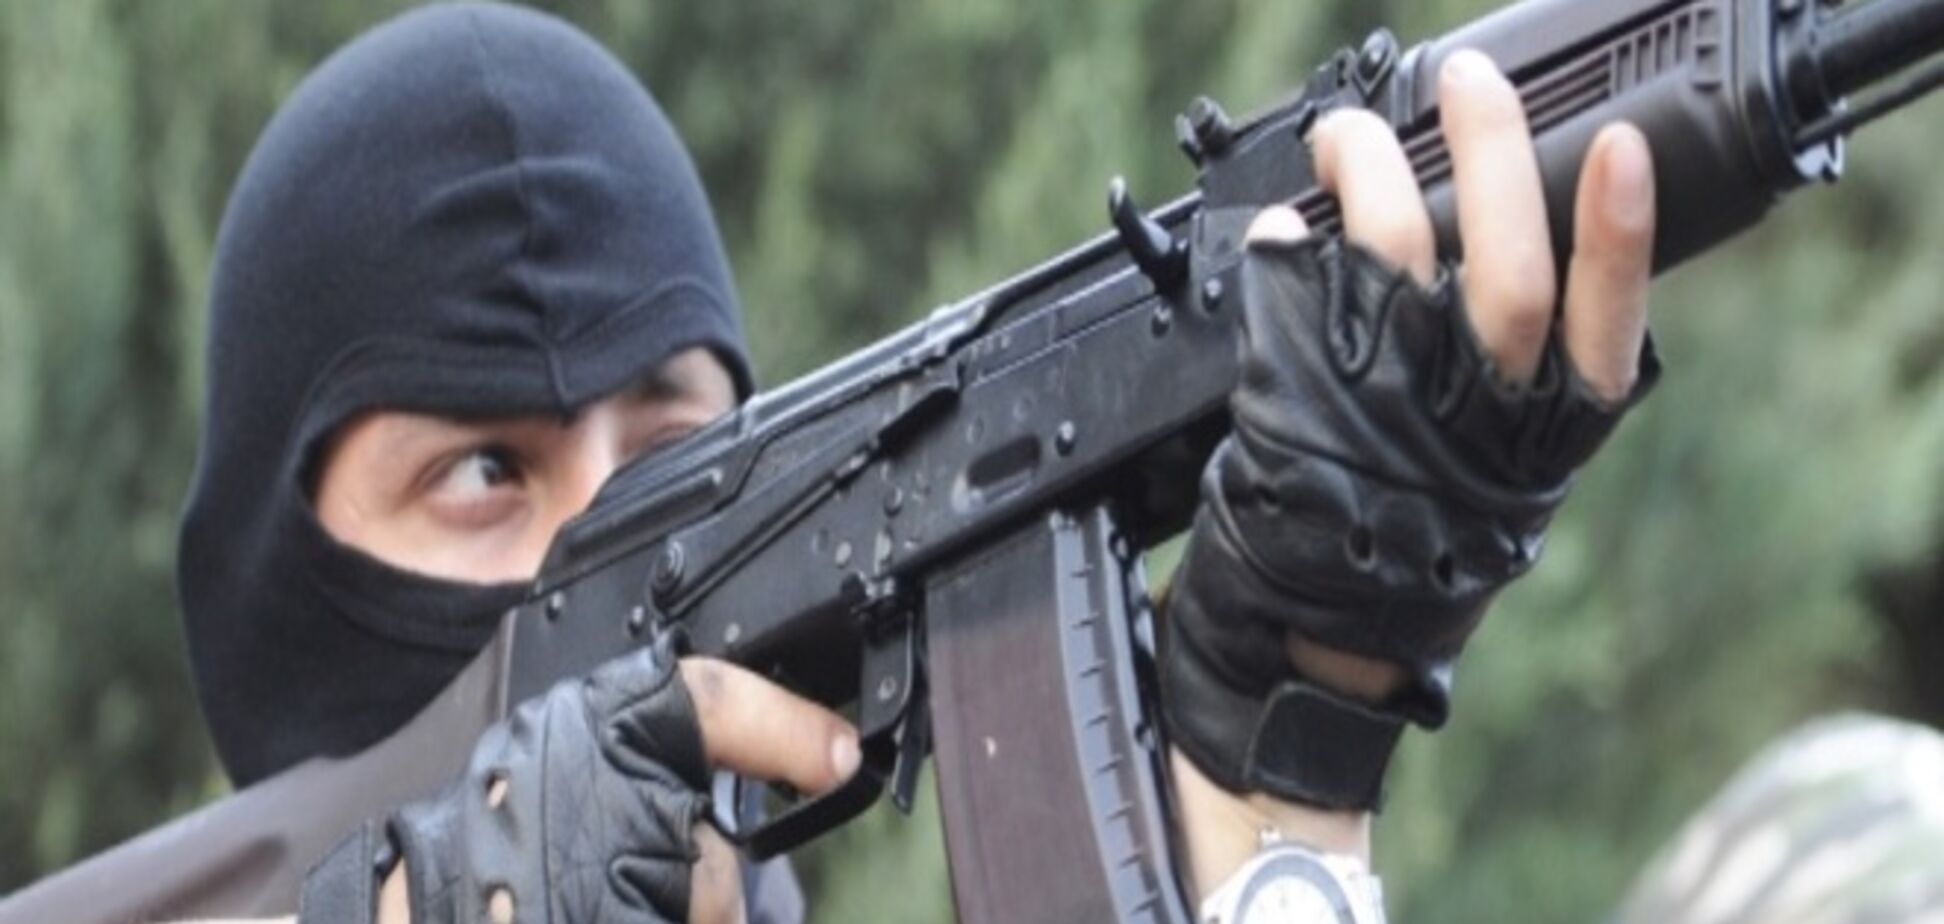 Террористы готовят диверсии в общественных местах Киева - генерал Маломуж